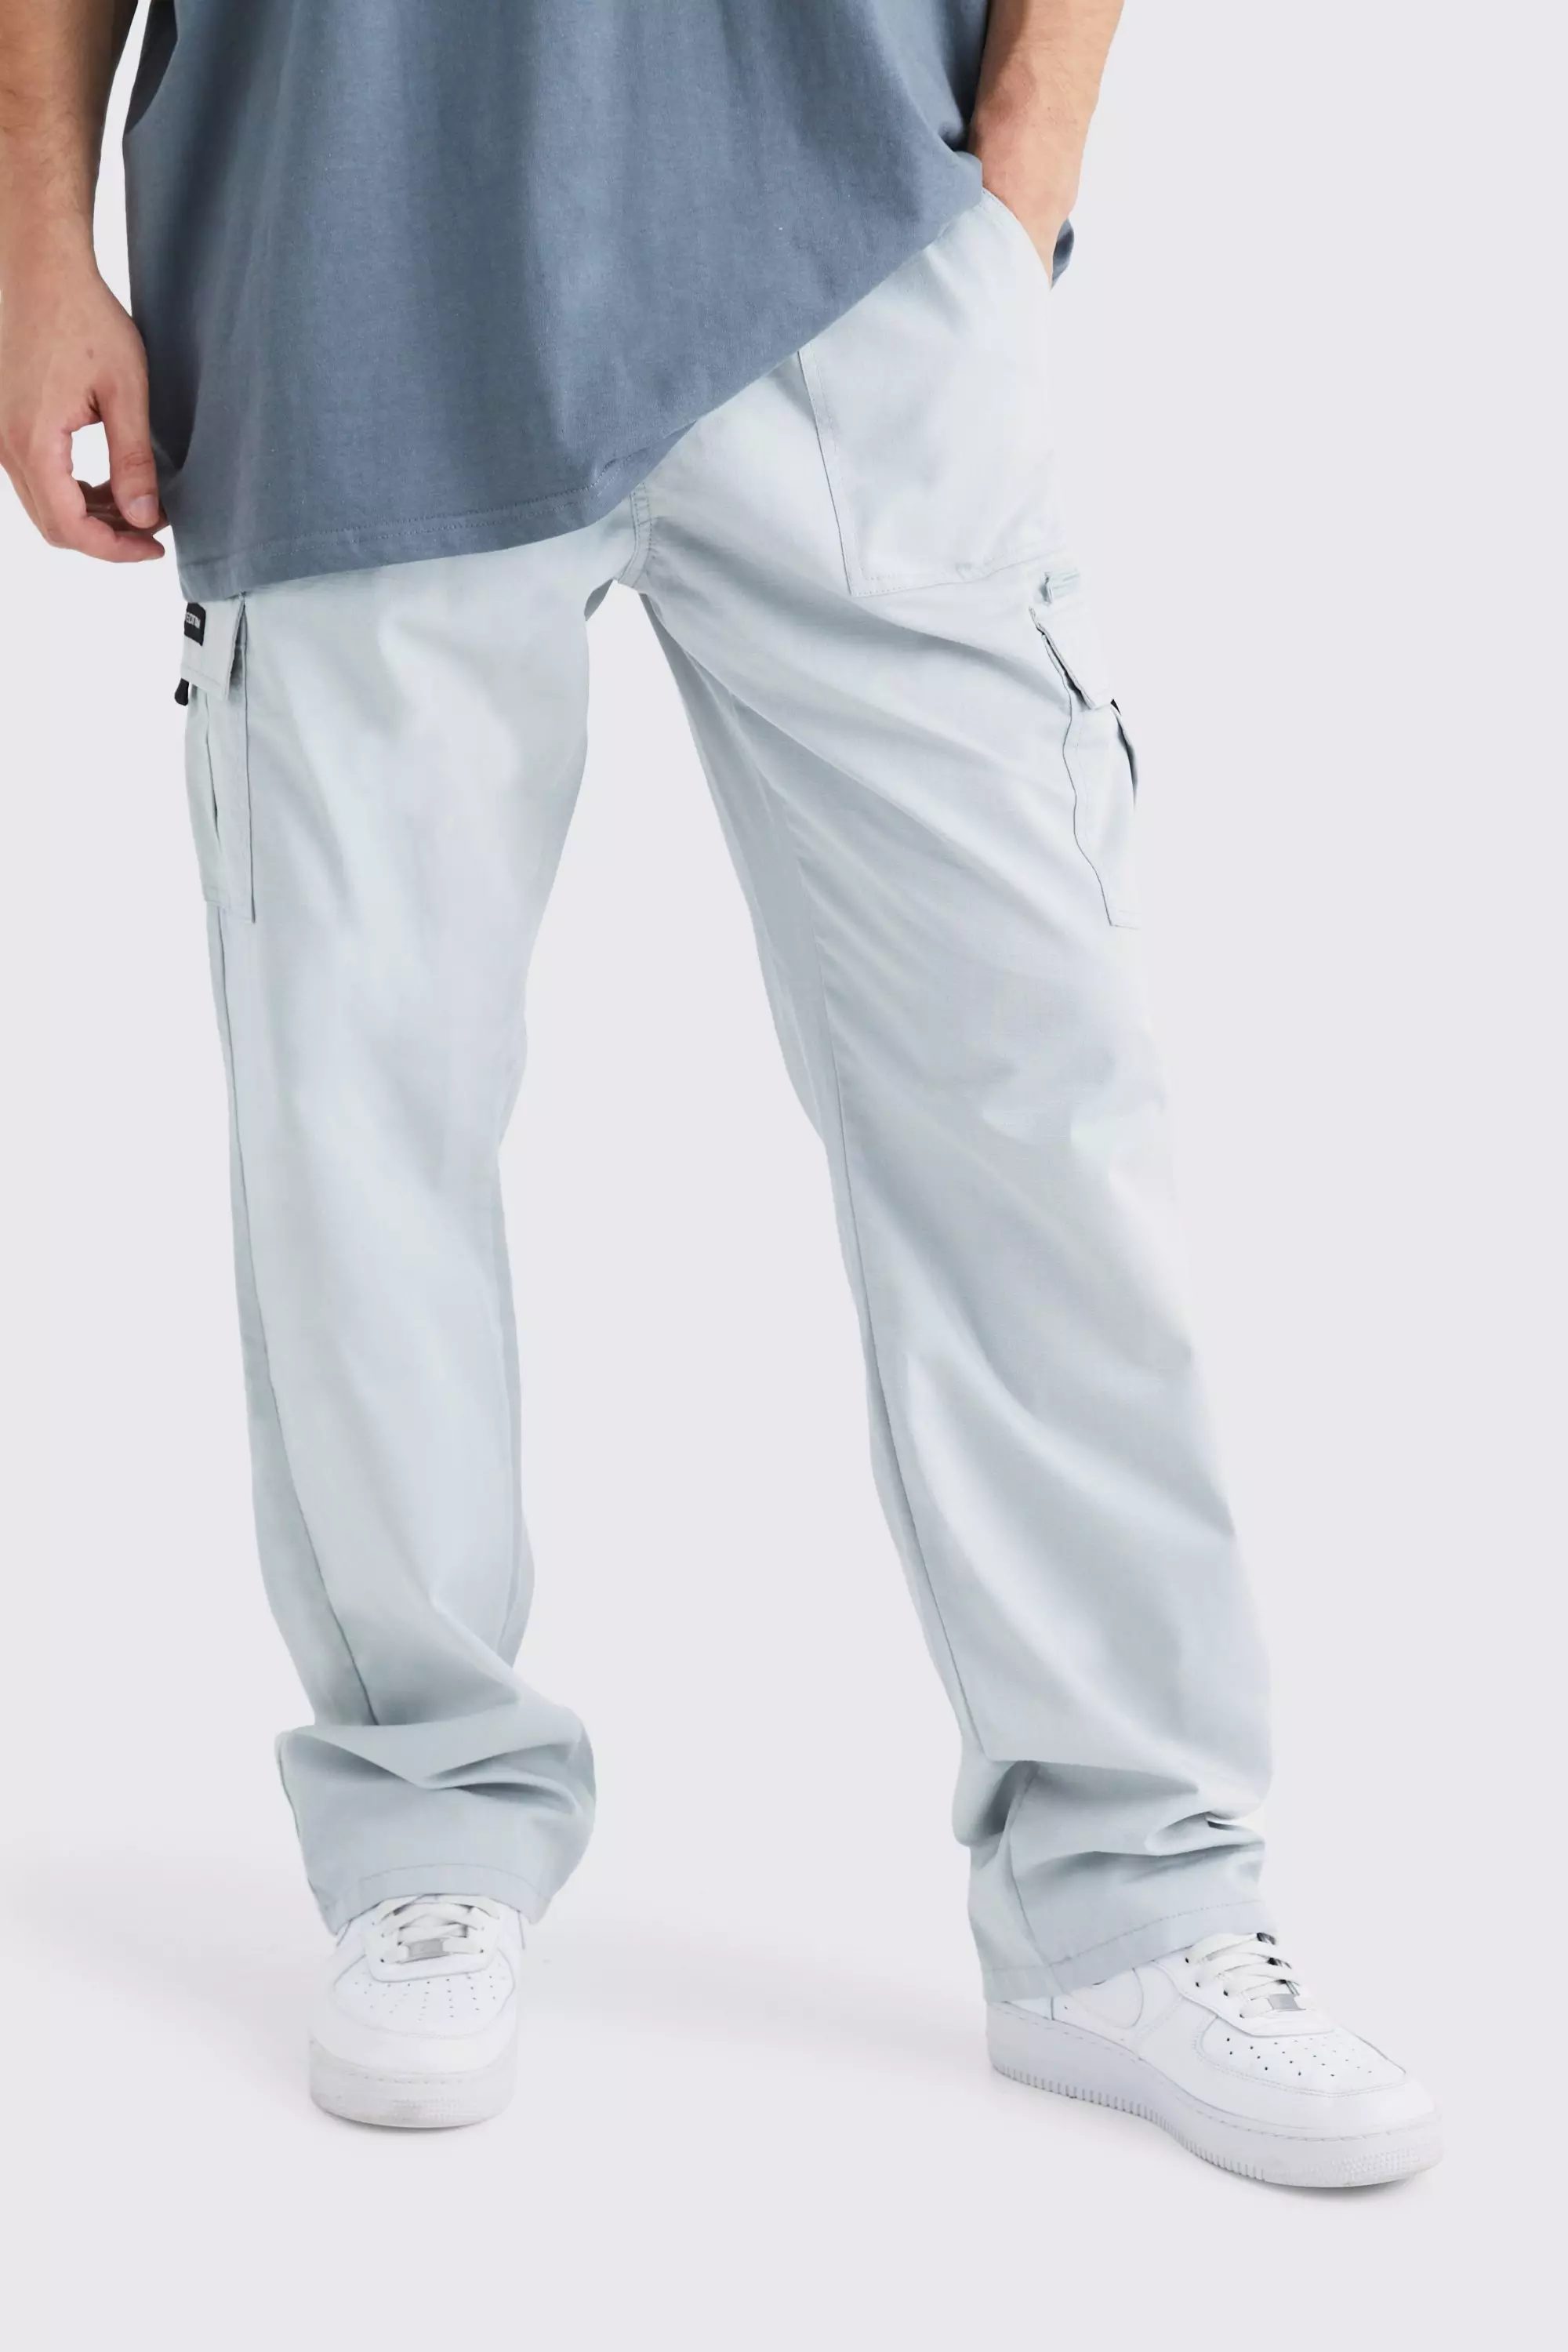 Grey Tall Elastic Ripstop Cargo Zip Pants